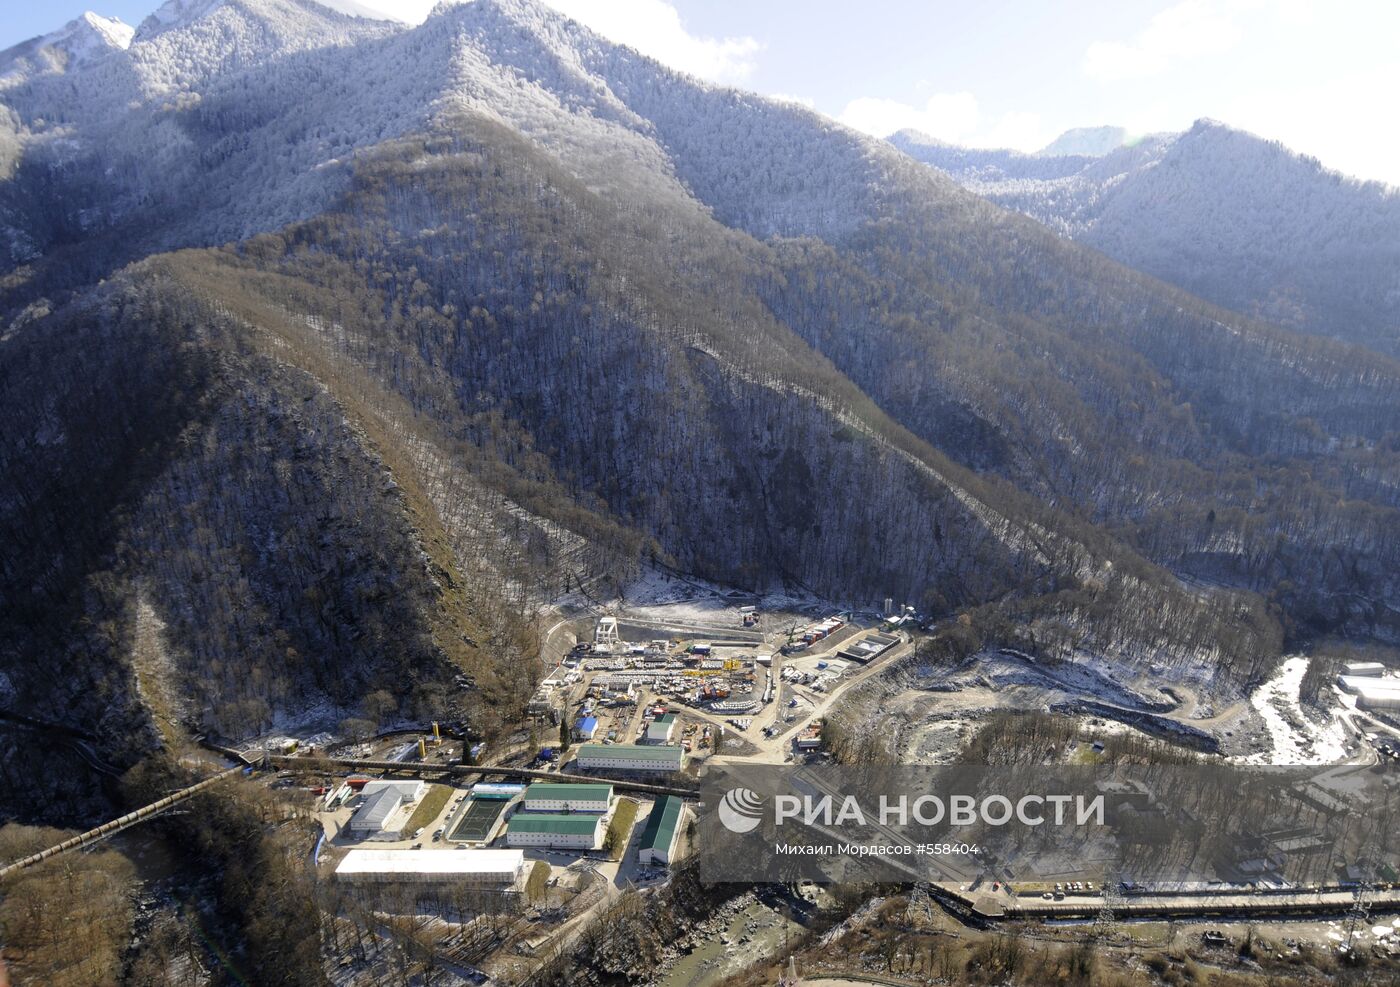 Строительство олимпийских объектов в Сочи. Вид с вертолета